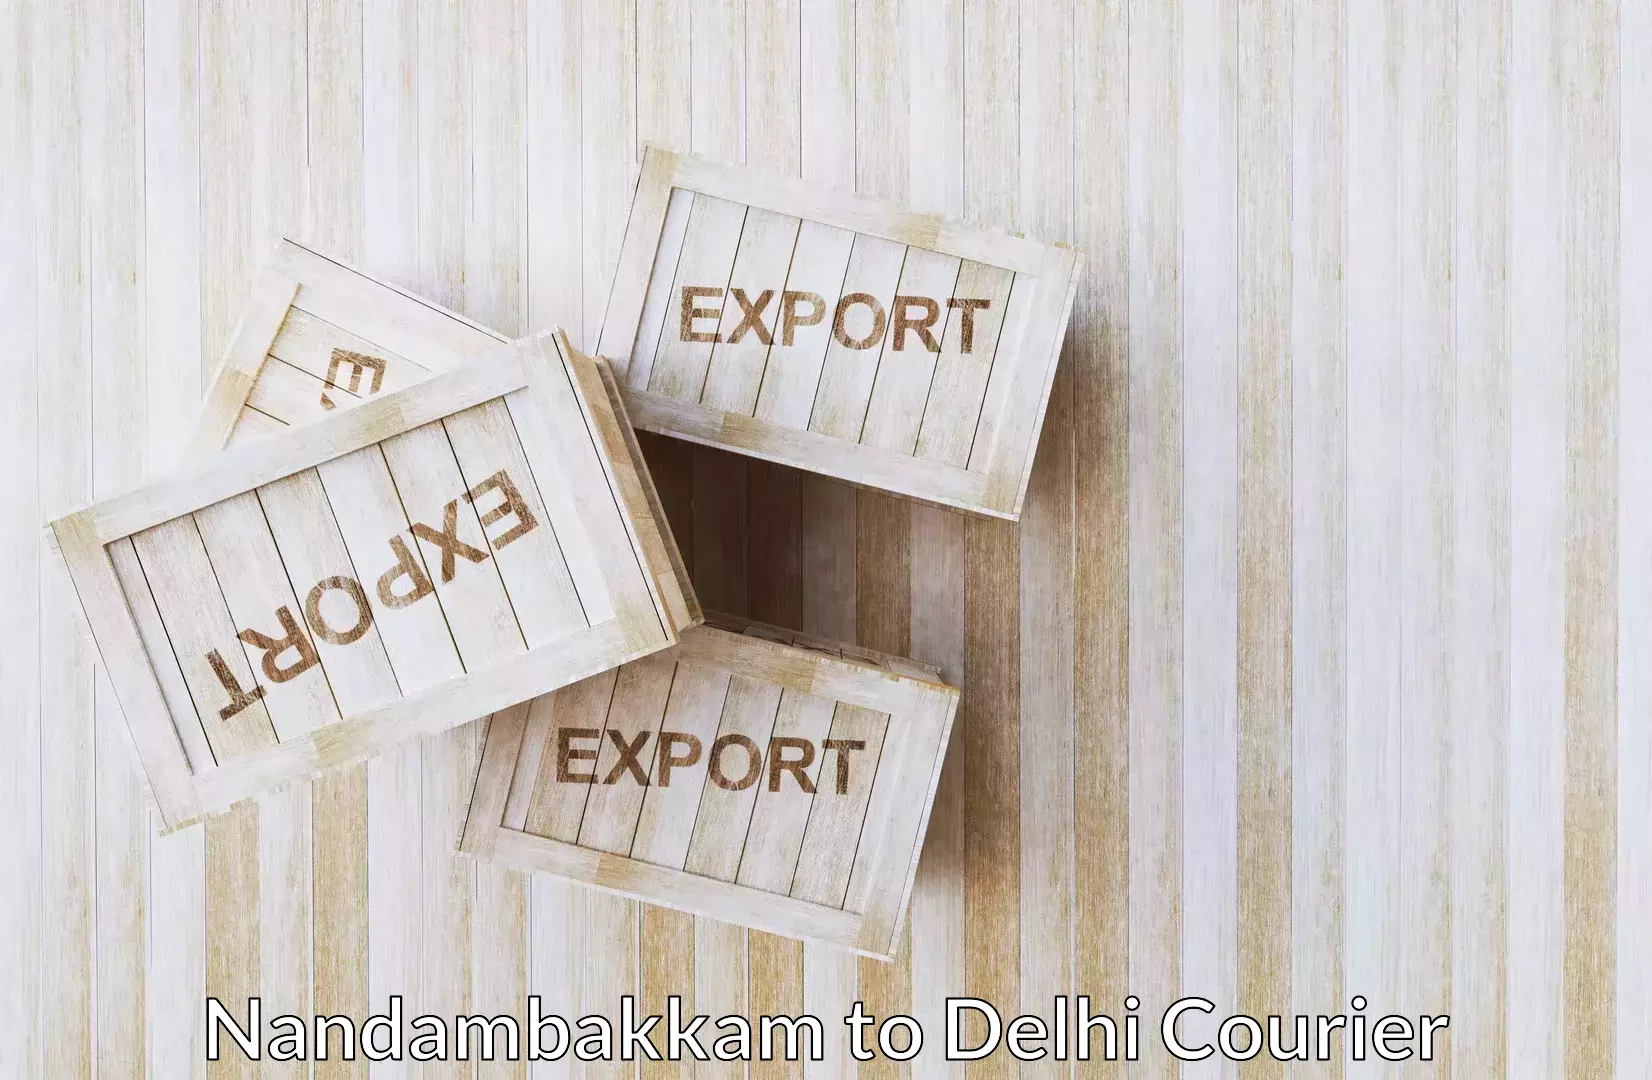 Luggage shipping specialists Nandambakkam to IIT Delhi